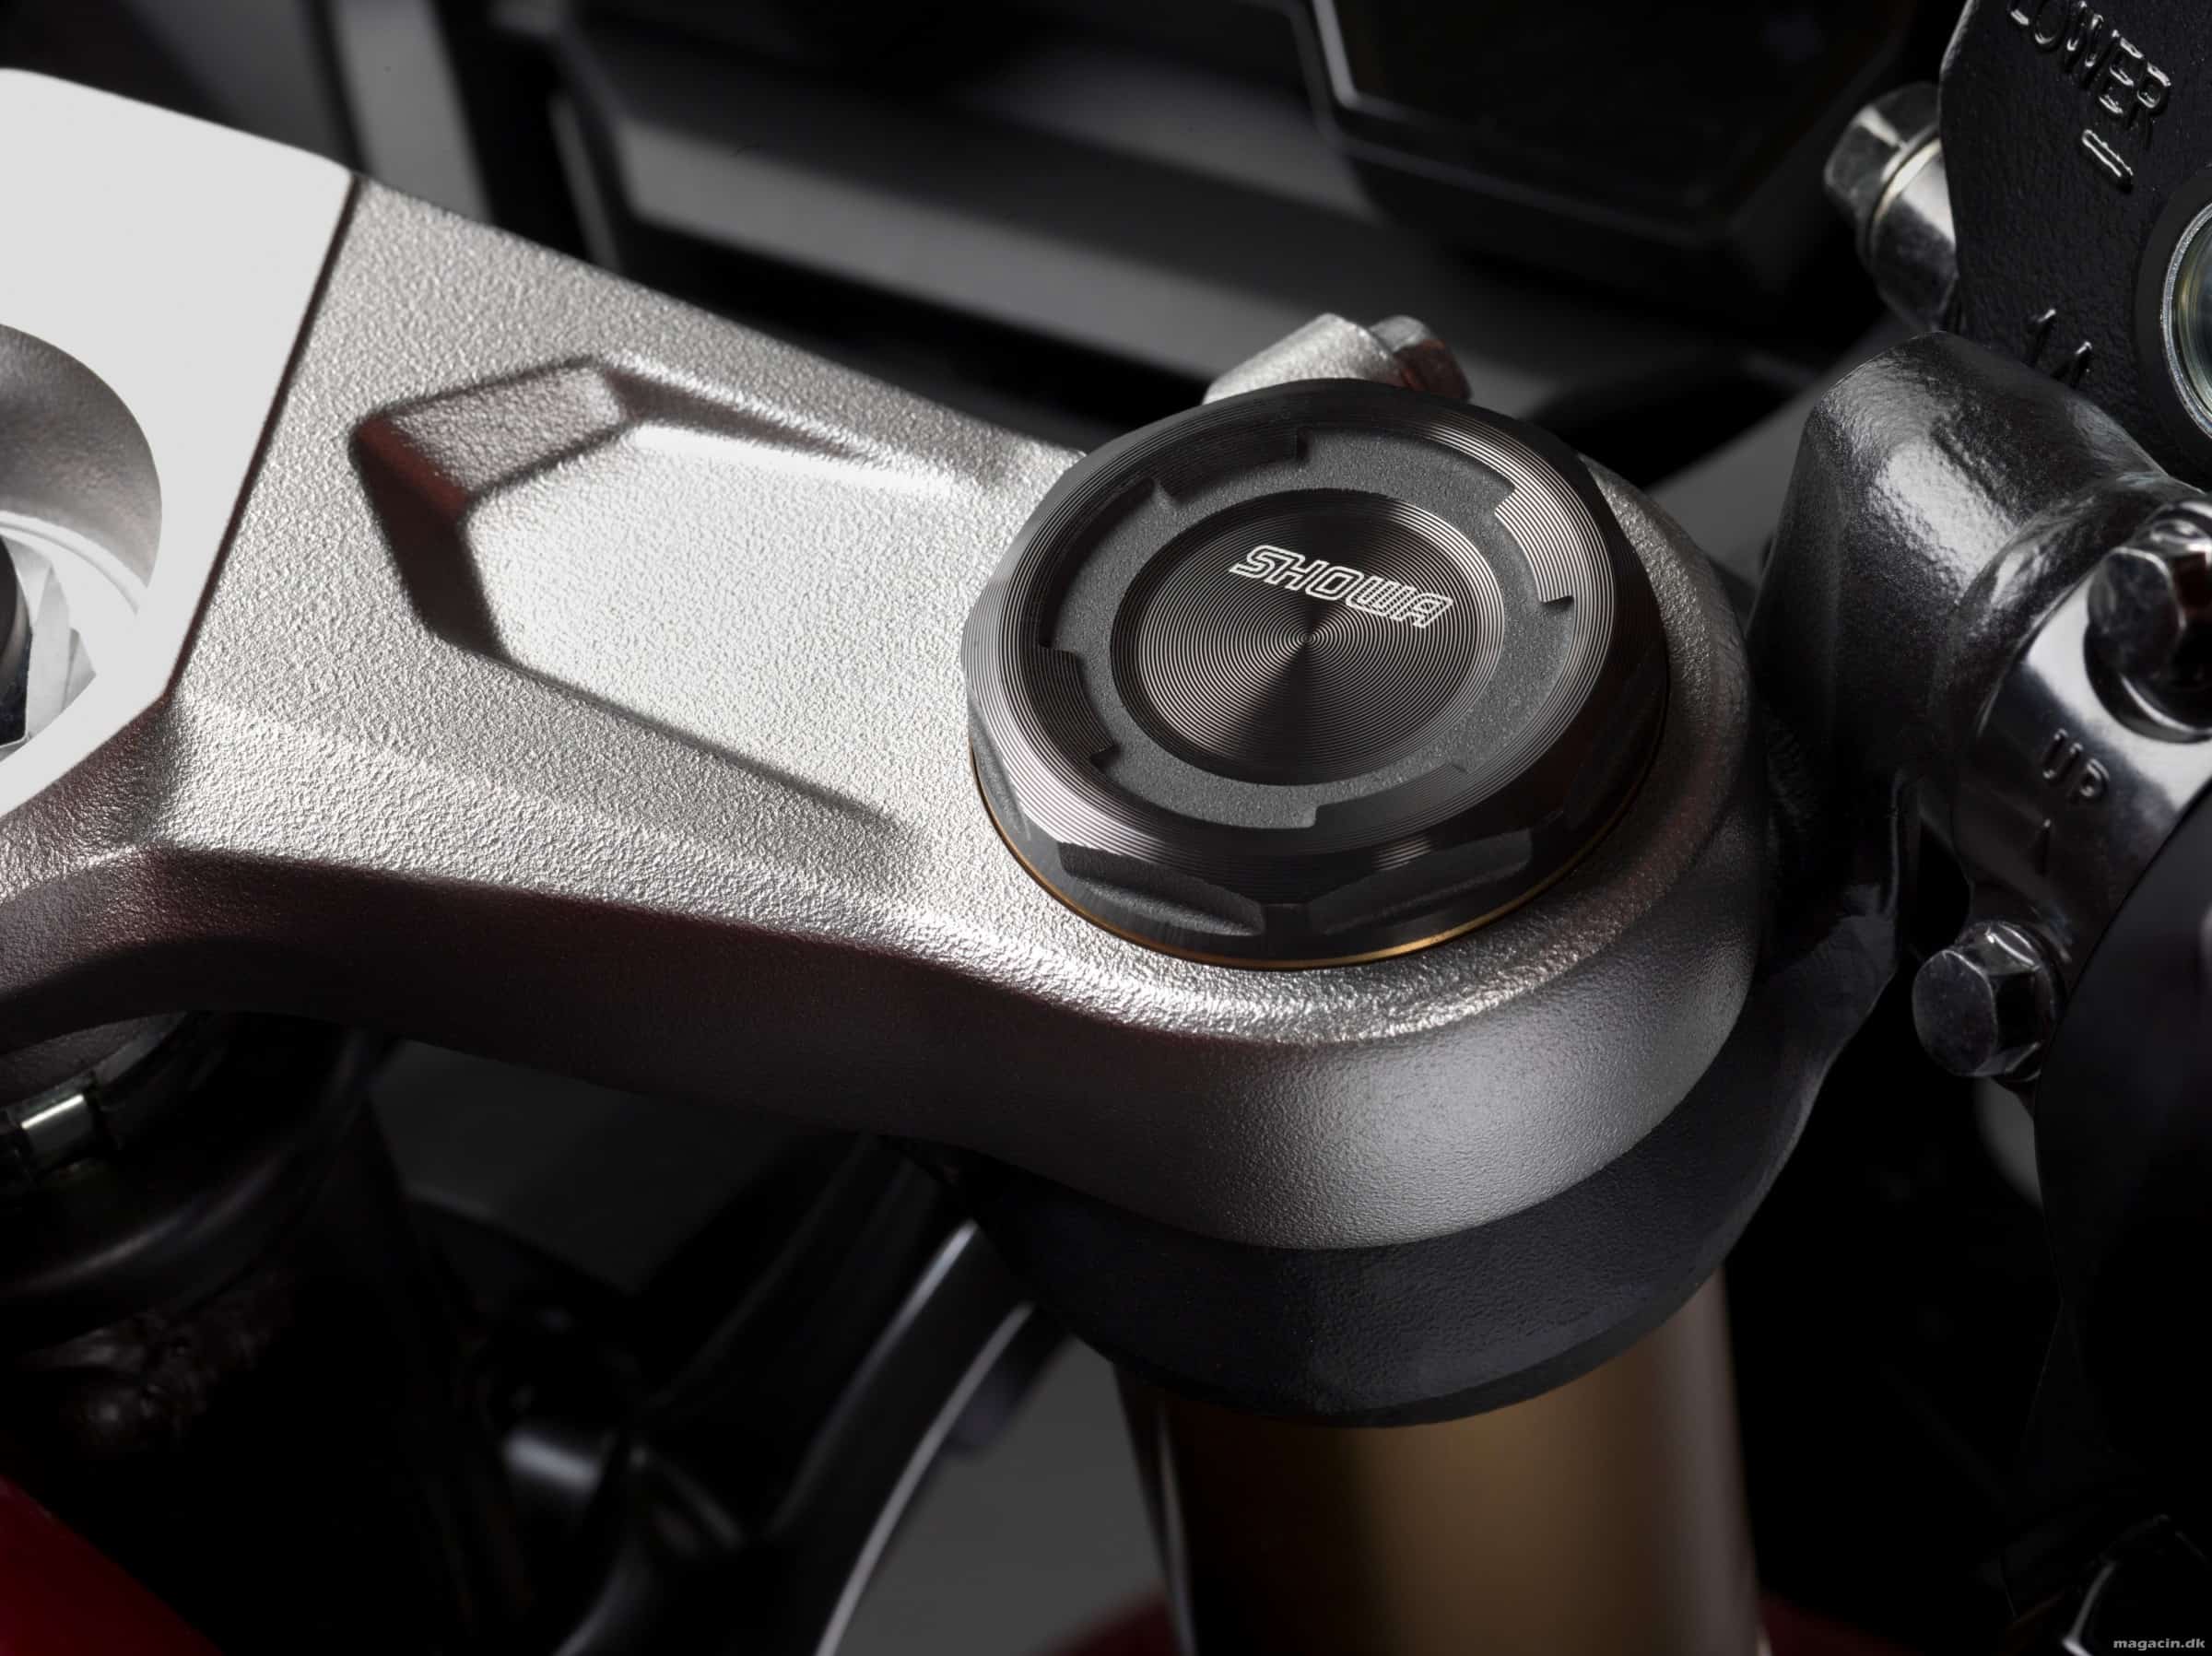 Prøvekørt: 2019 Honda CBR 650 R – Sportslig og letkørt